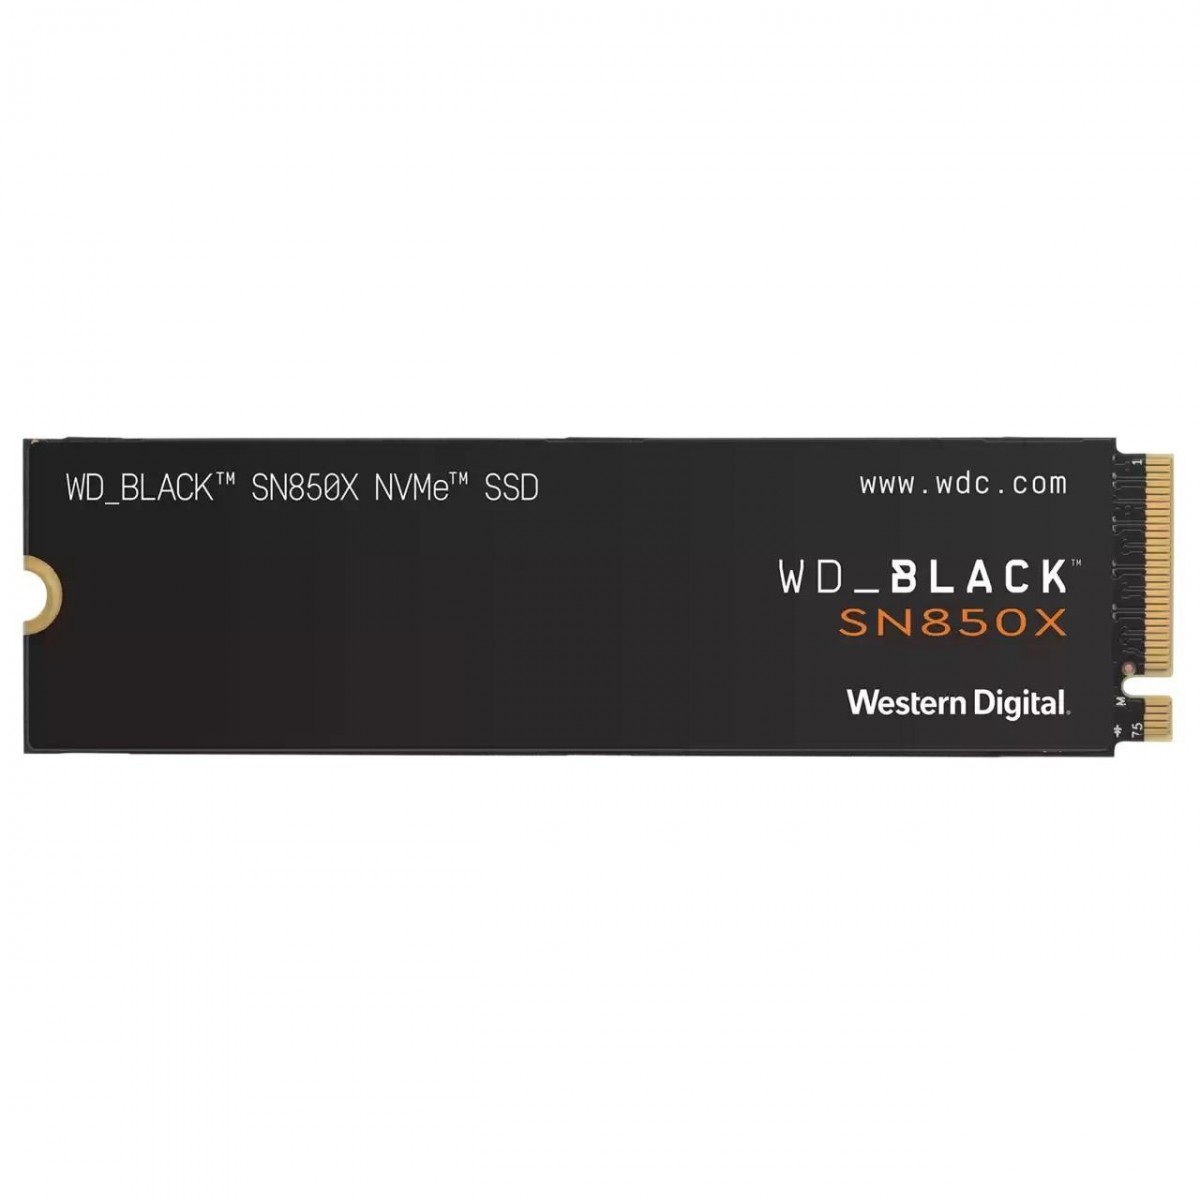 4TB BLACK NVME SSD M.2 PCIE-GEN3 5Y WARRANTY SN850X